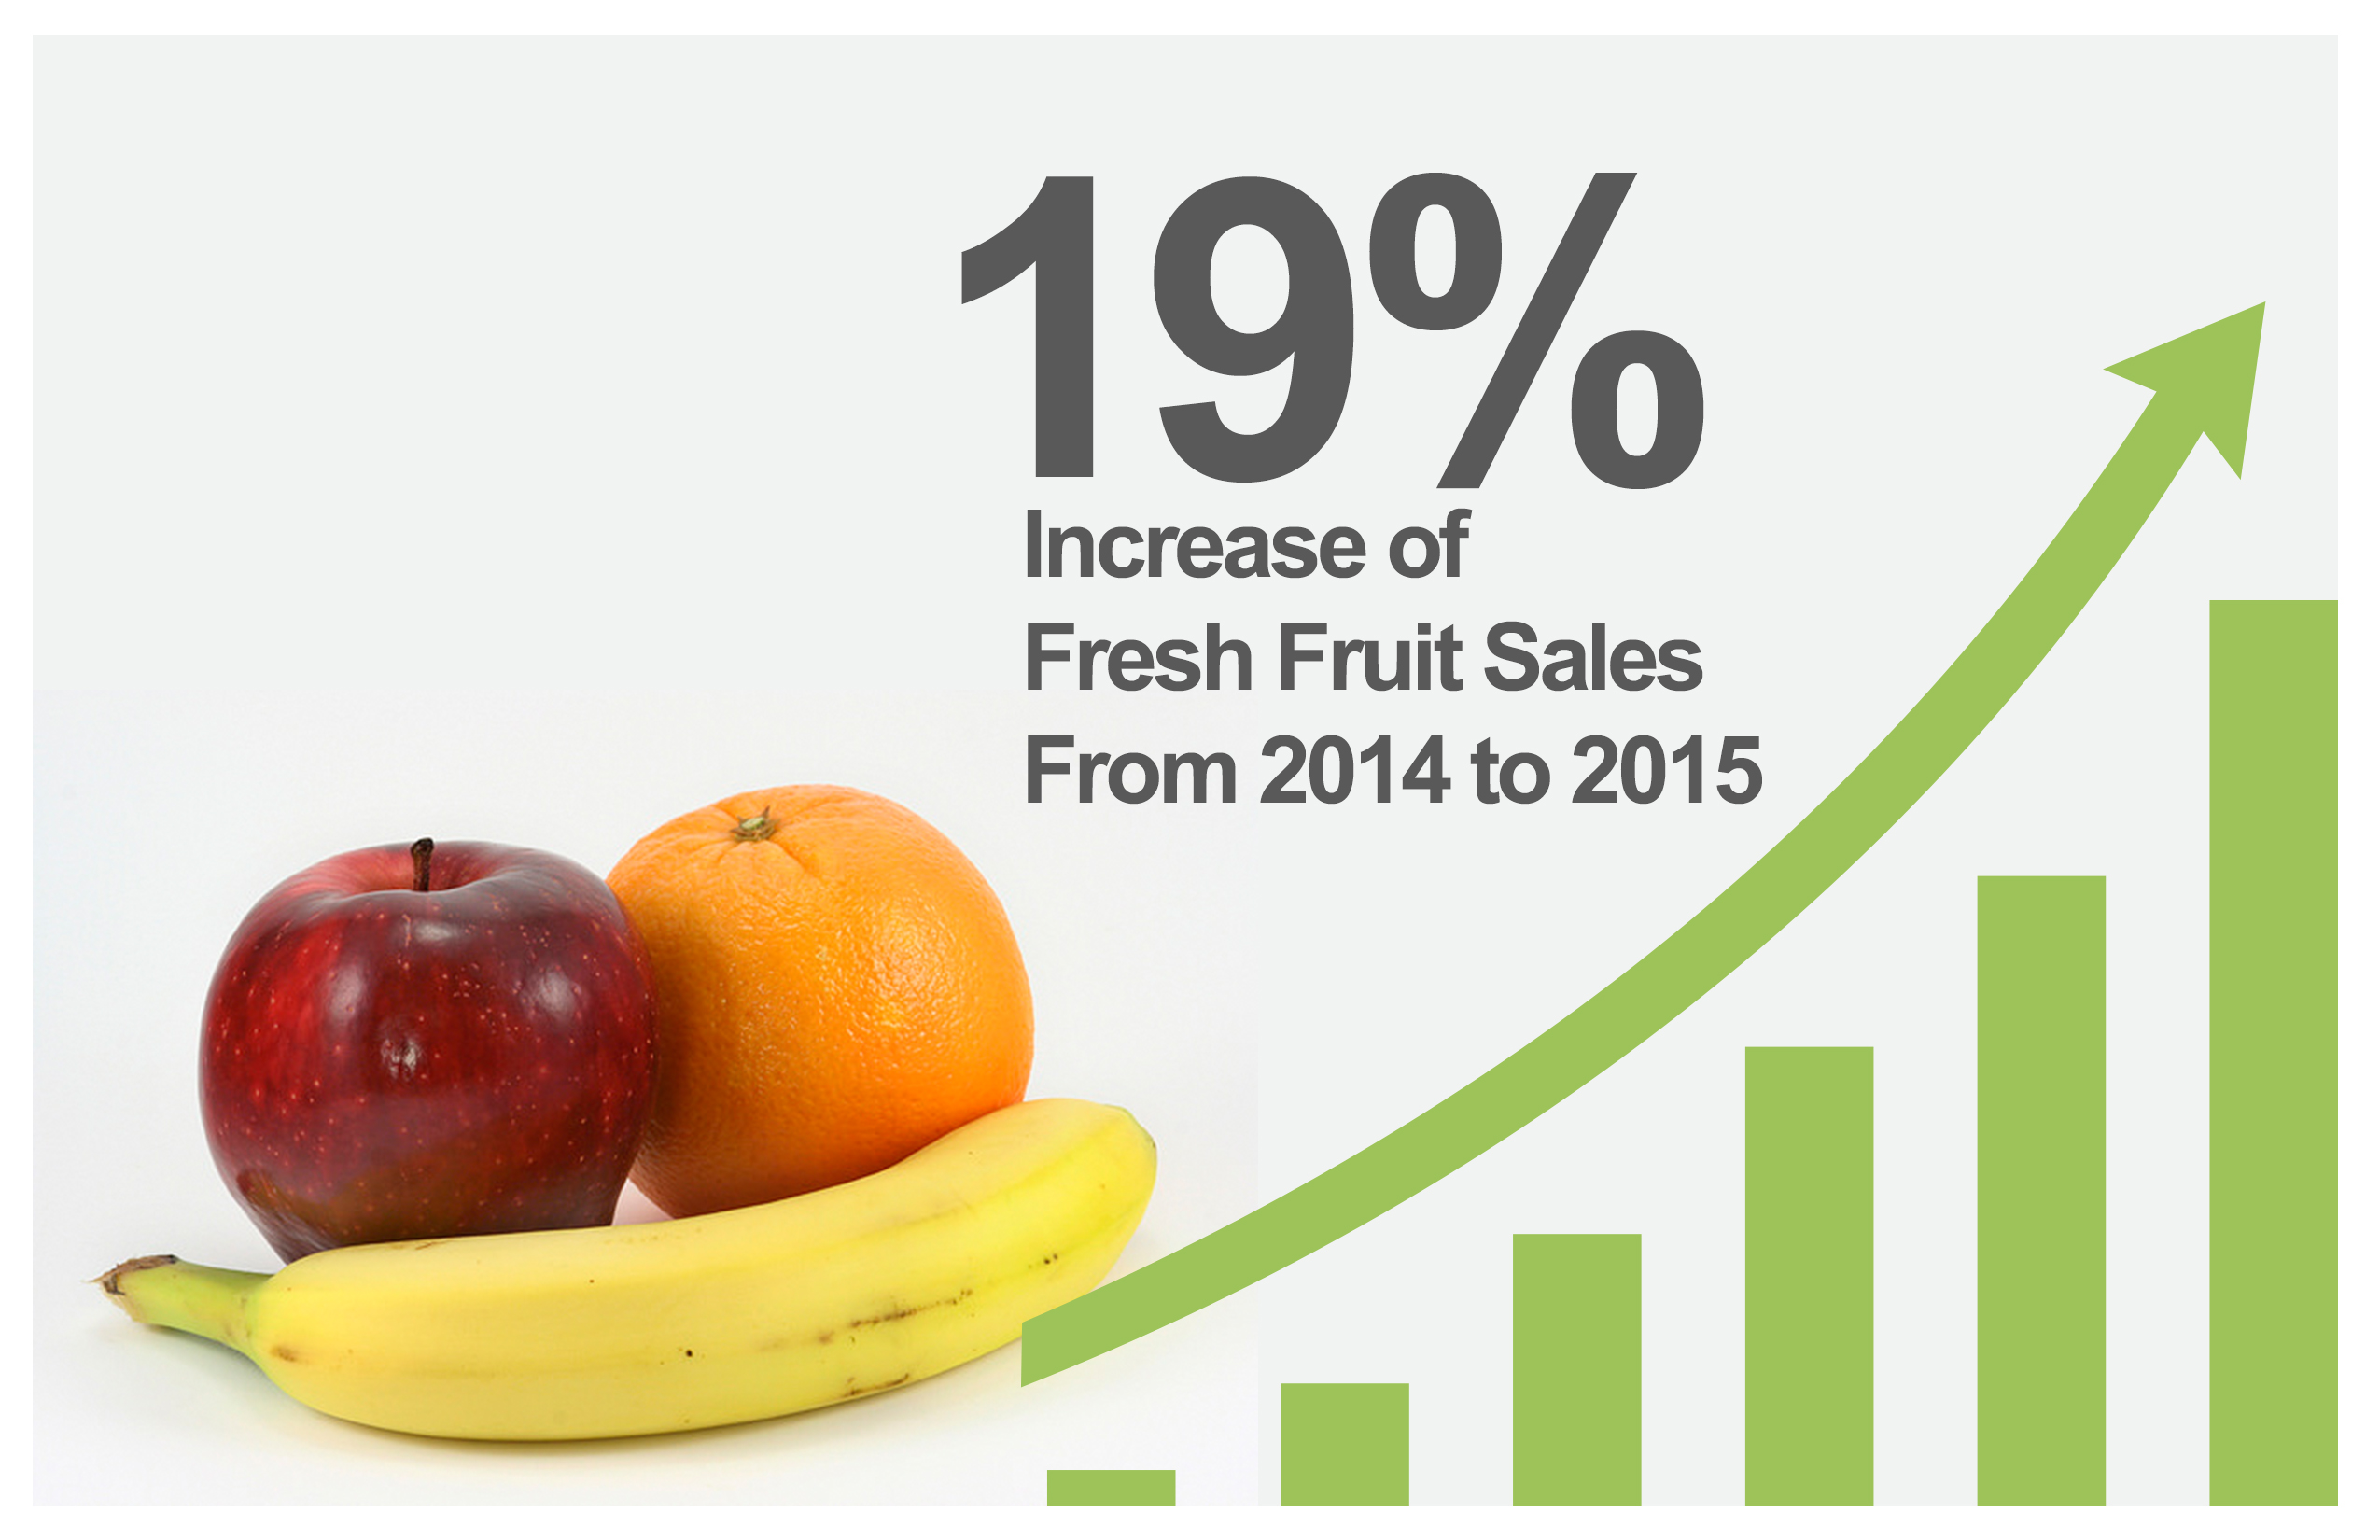 Fresh Fruit Increasing in Sales